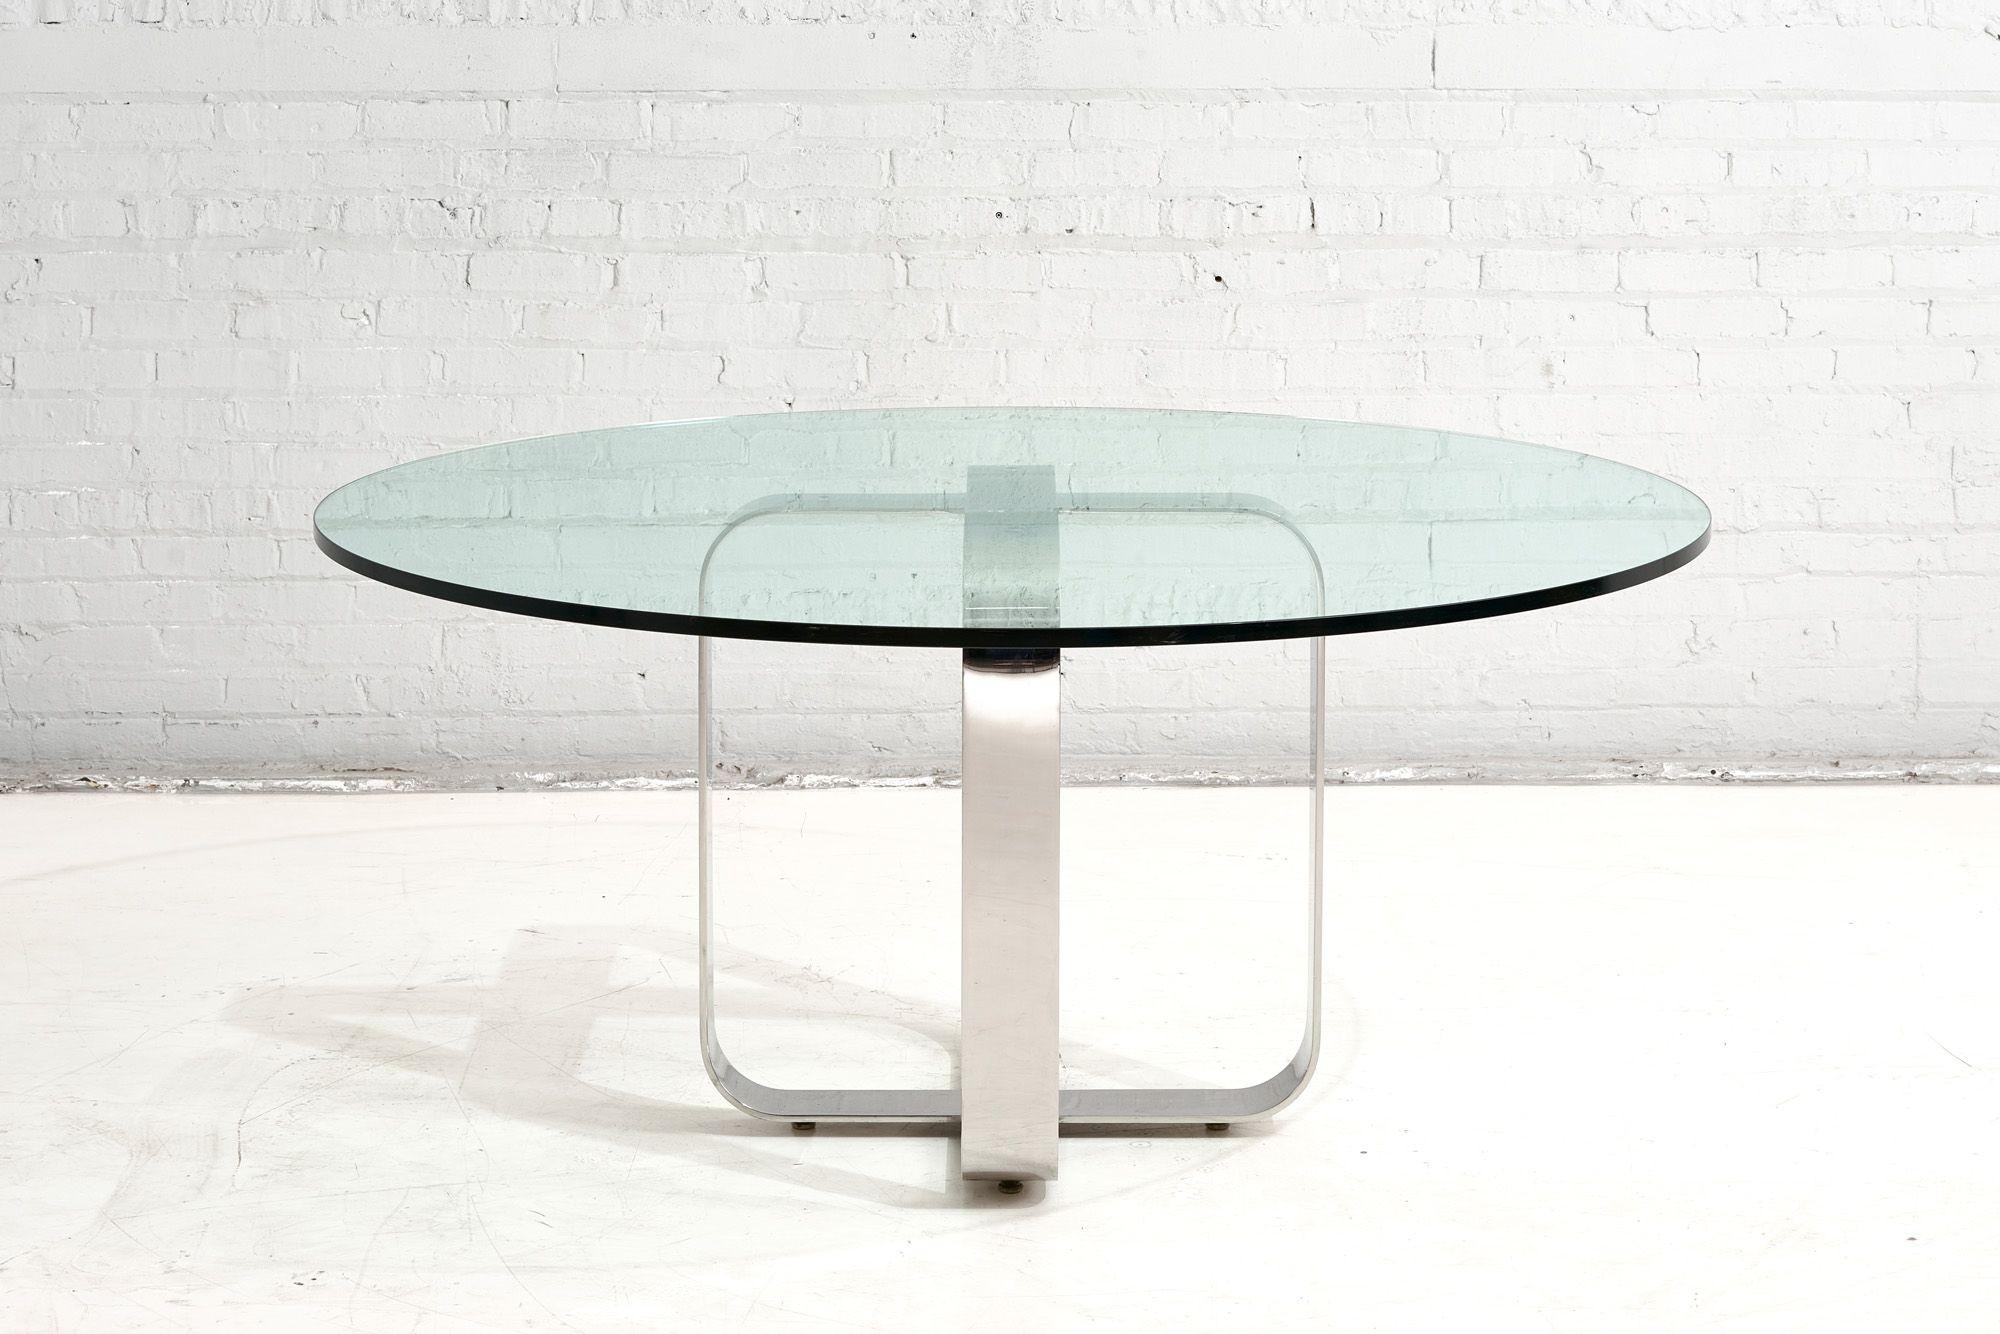 Table de salle à manger Gary Gutterman en acier inoxydable et verre, Axius Designs, 1970
Le verre a un diamètre de 60 pouces. Vous pouvez également y mettre la taille que vous souhaitez.